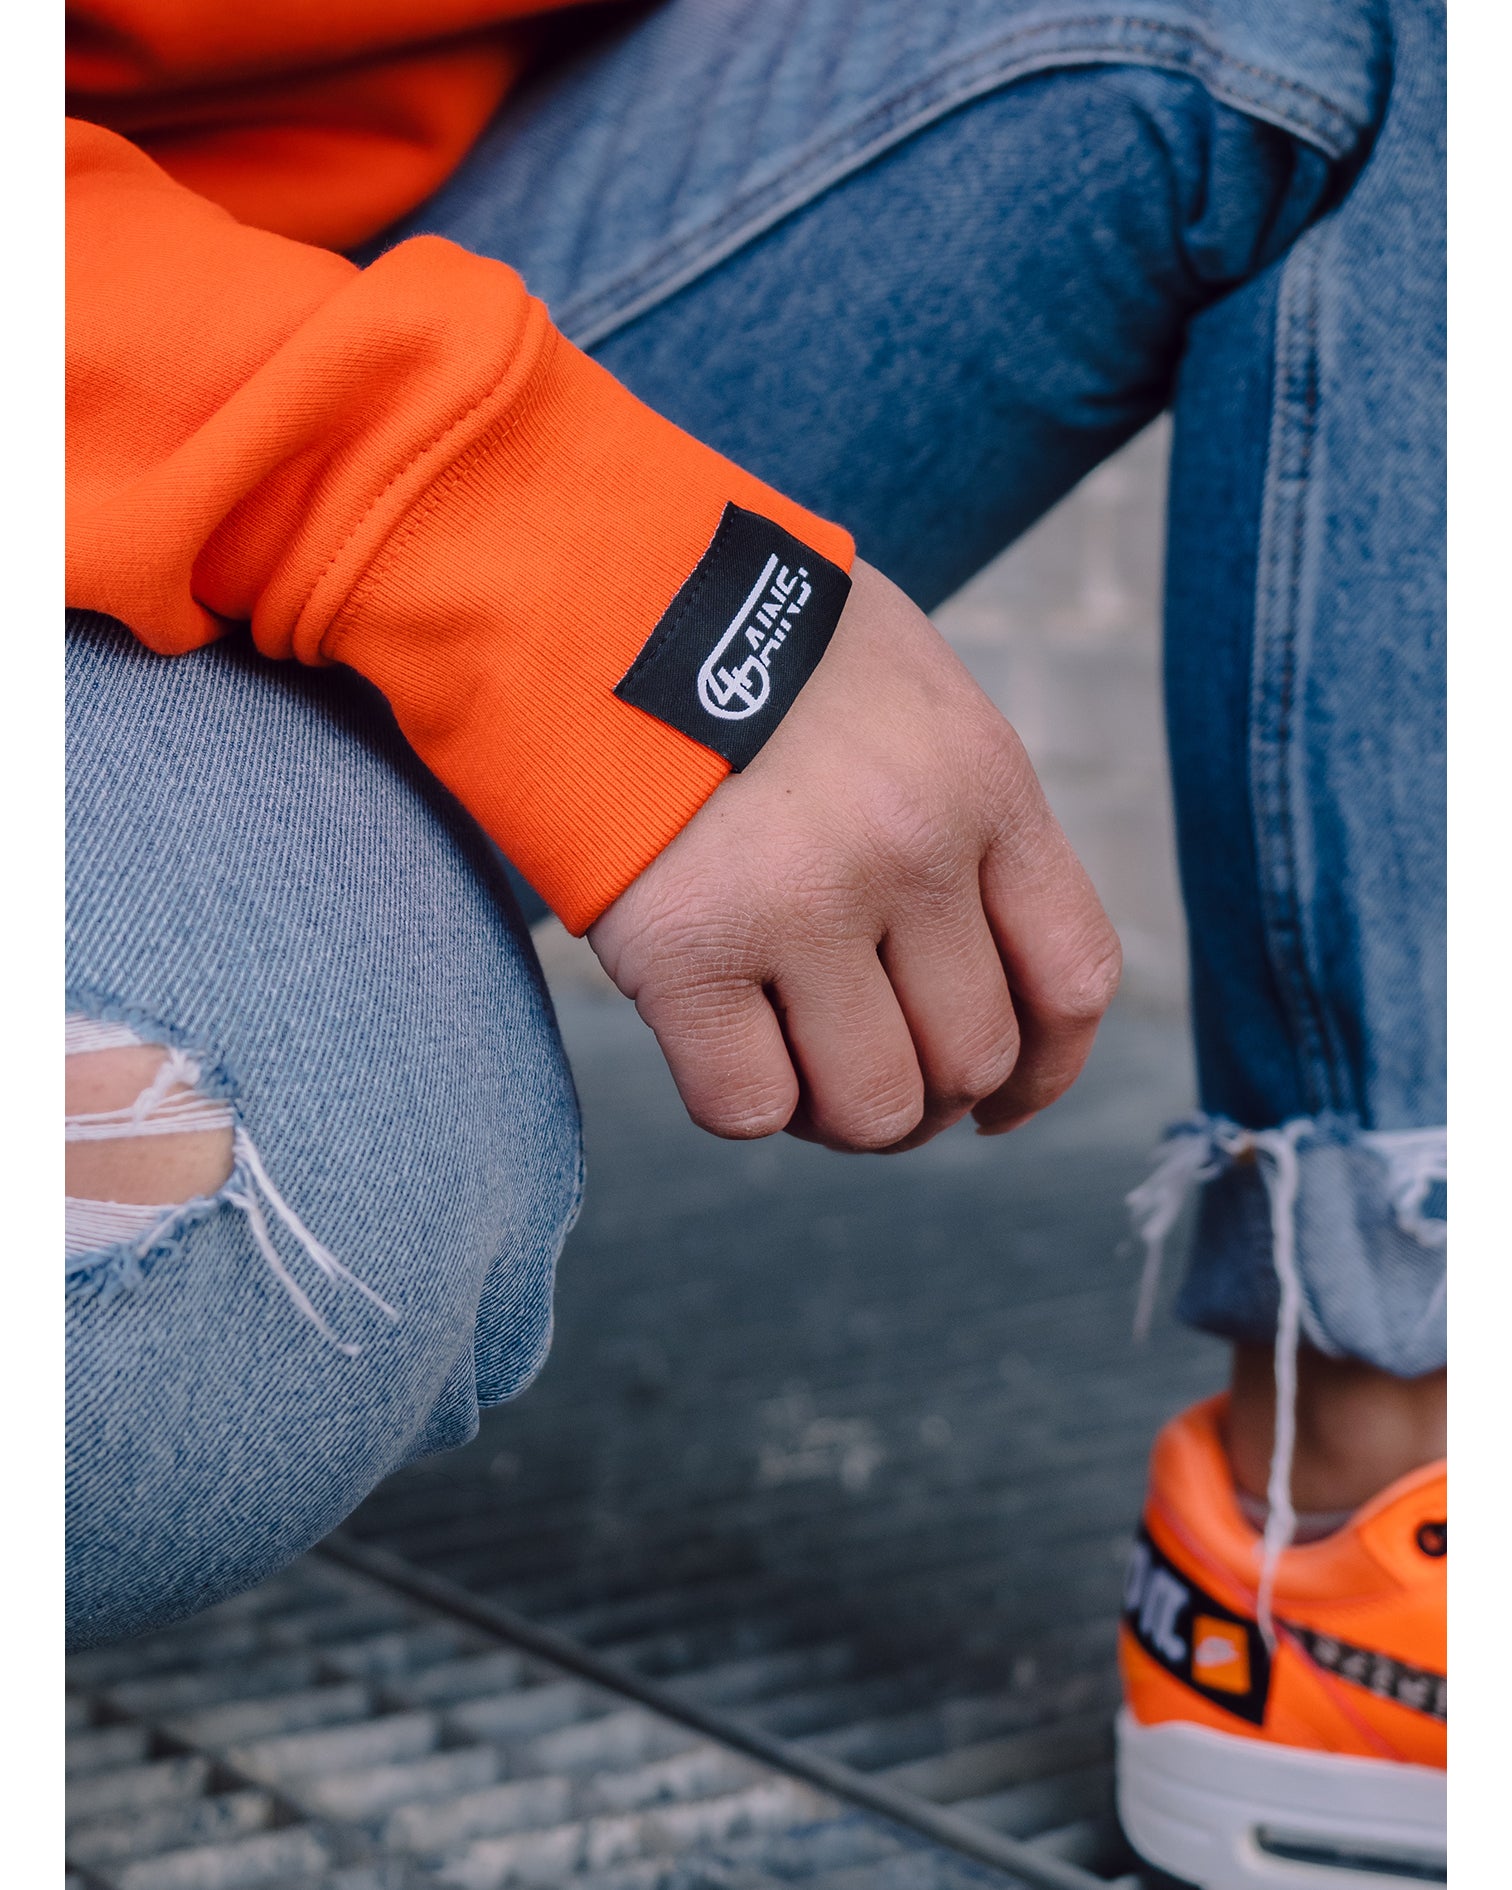 Weblabel am Arm vom 4GAINS orange/black Sweaterkleid 